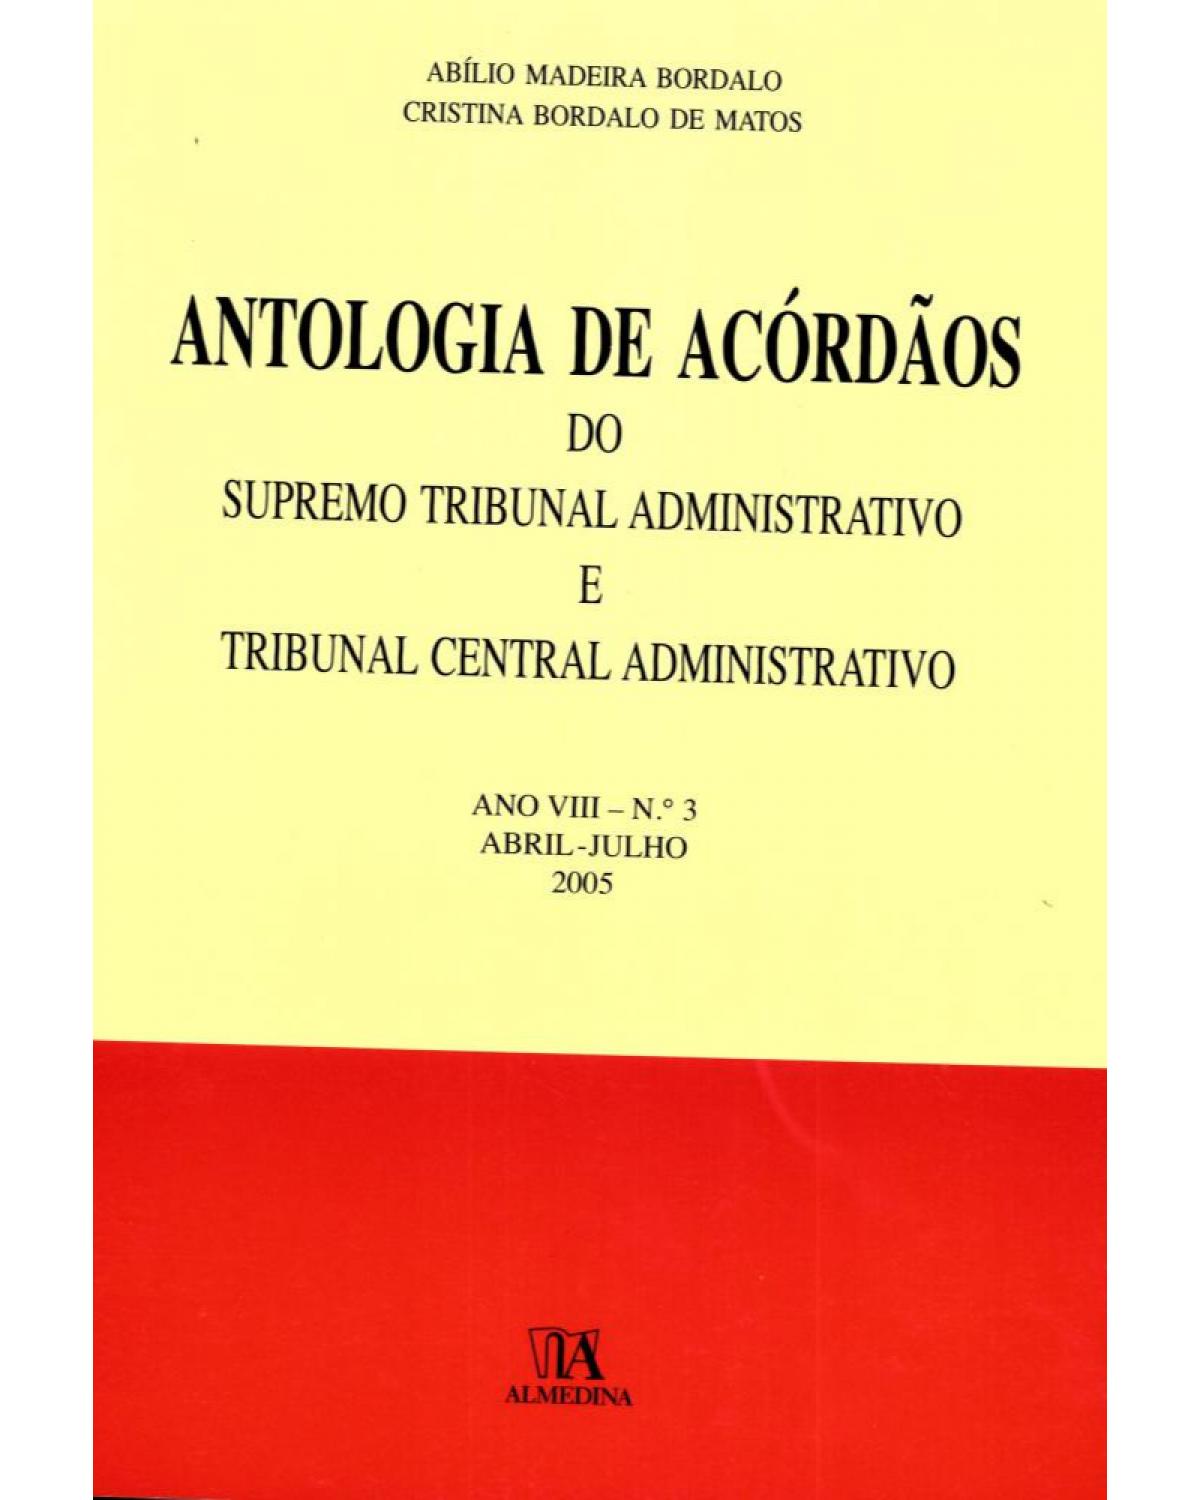 Antologia de acórdãos do supremo tribunal administrativo e tribunal central administrativo - ano VIII: Abril-julho 2005 - 1ª Edição | 2006